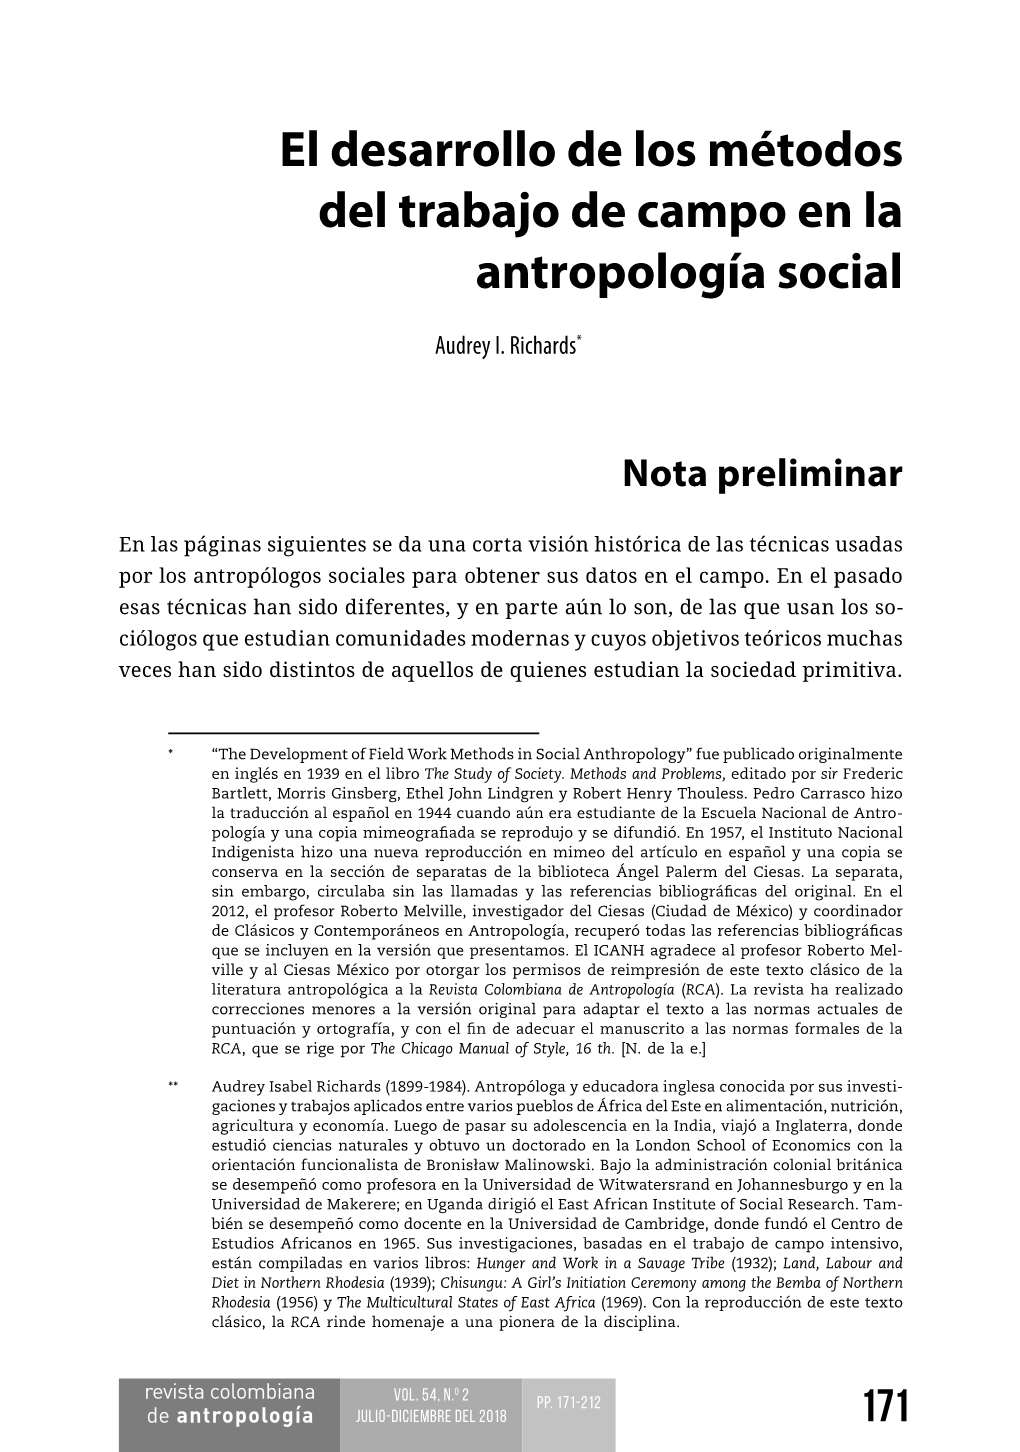 El Desarrollo De Los Métodos Del Trabajo De Campo En La 1Antropología Social